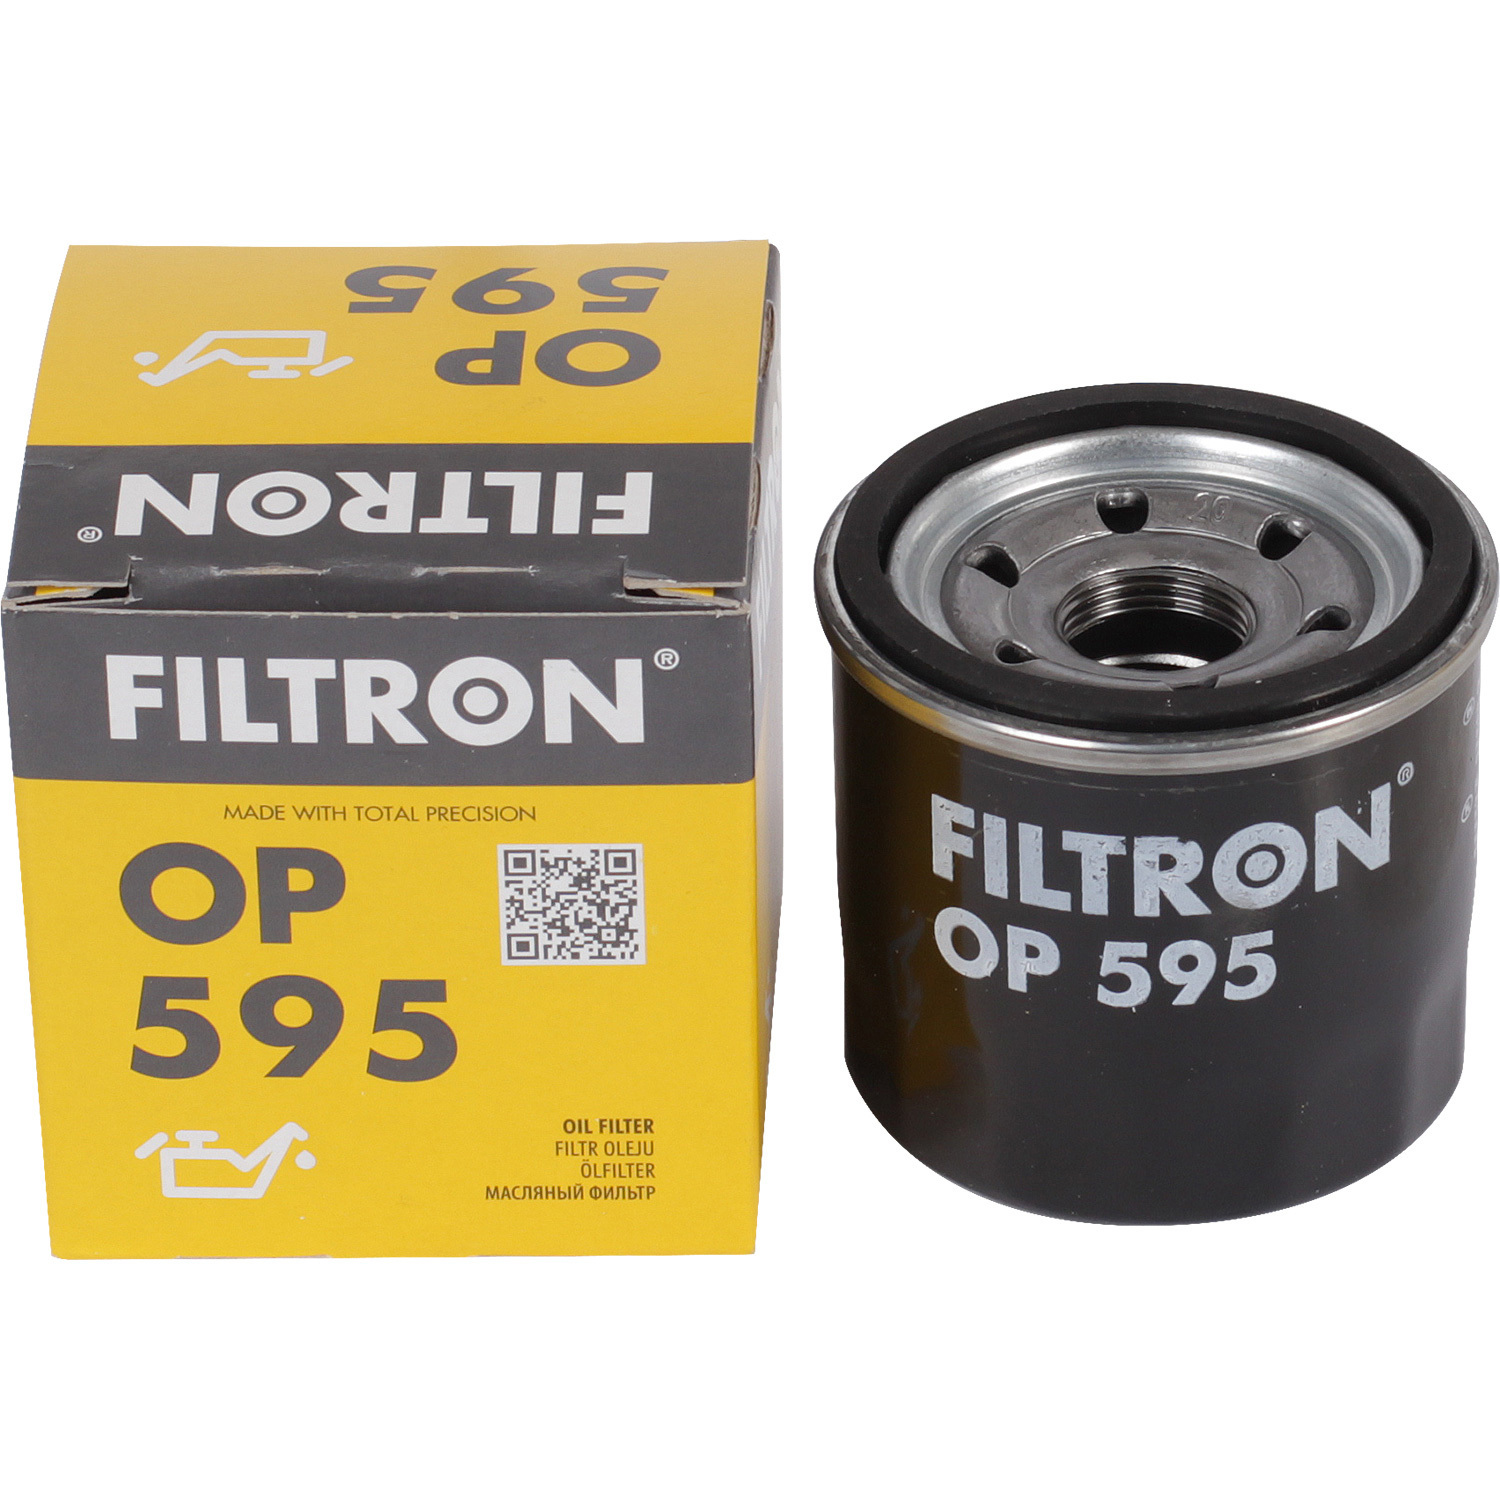 фильтры filtron фильтр масляный filtron oe673 Фильтры Filtron Фильтр масляный Filtron OP595